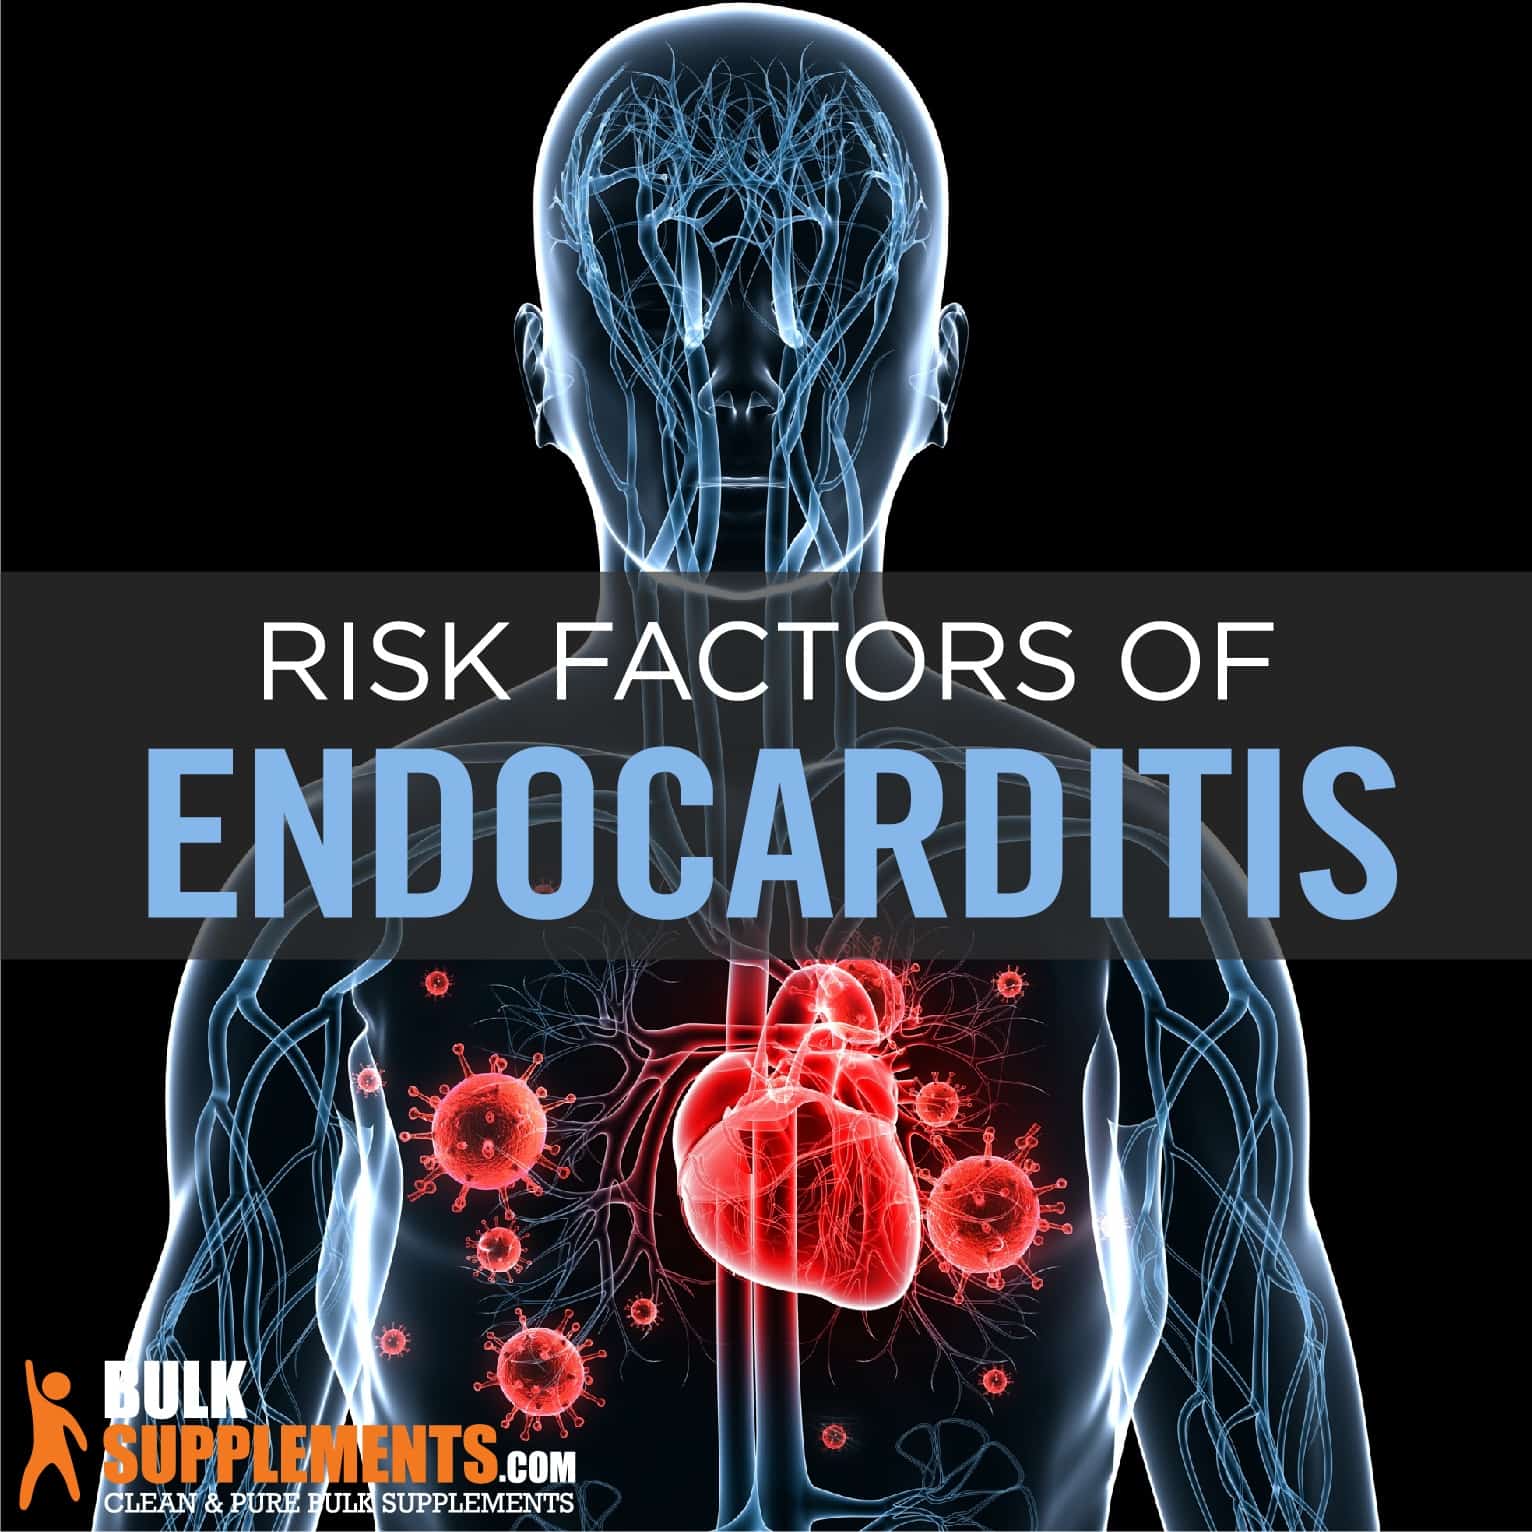 Endocarditis